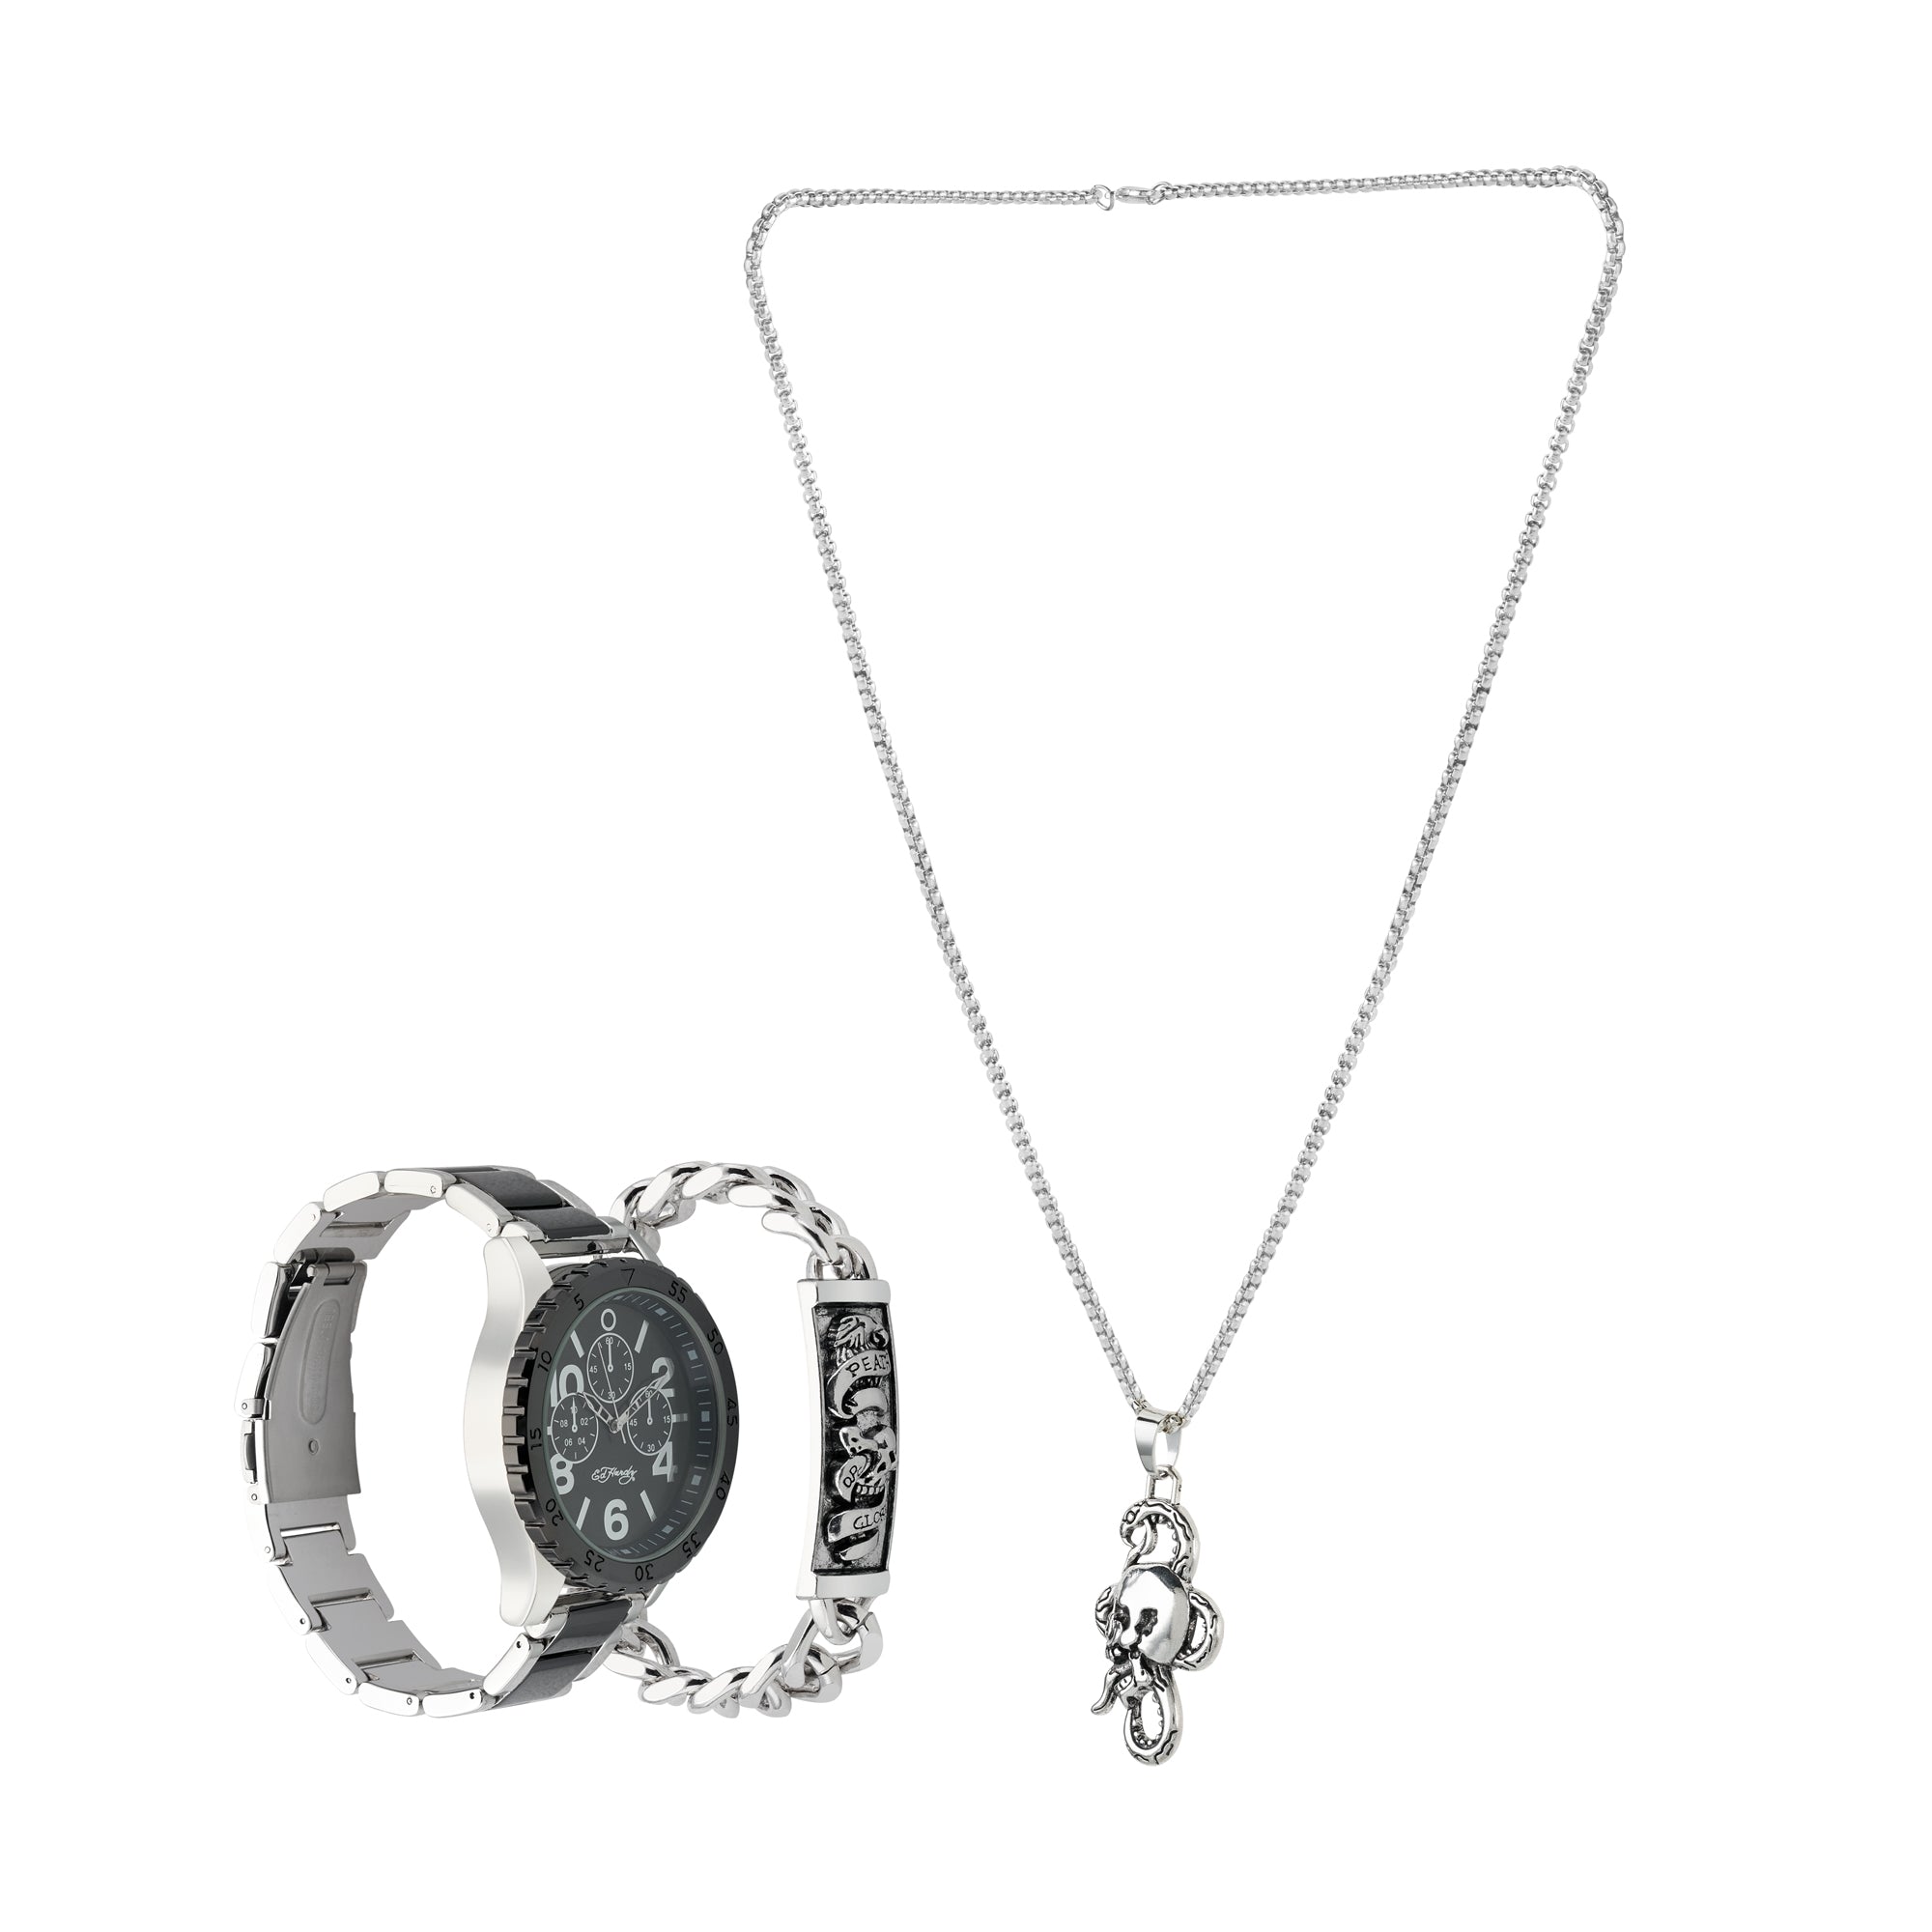 Ed Hardy Men's Two Tone Metal Bracelet Watch 46mm Gift Set